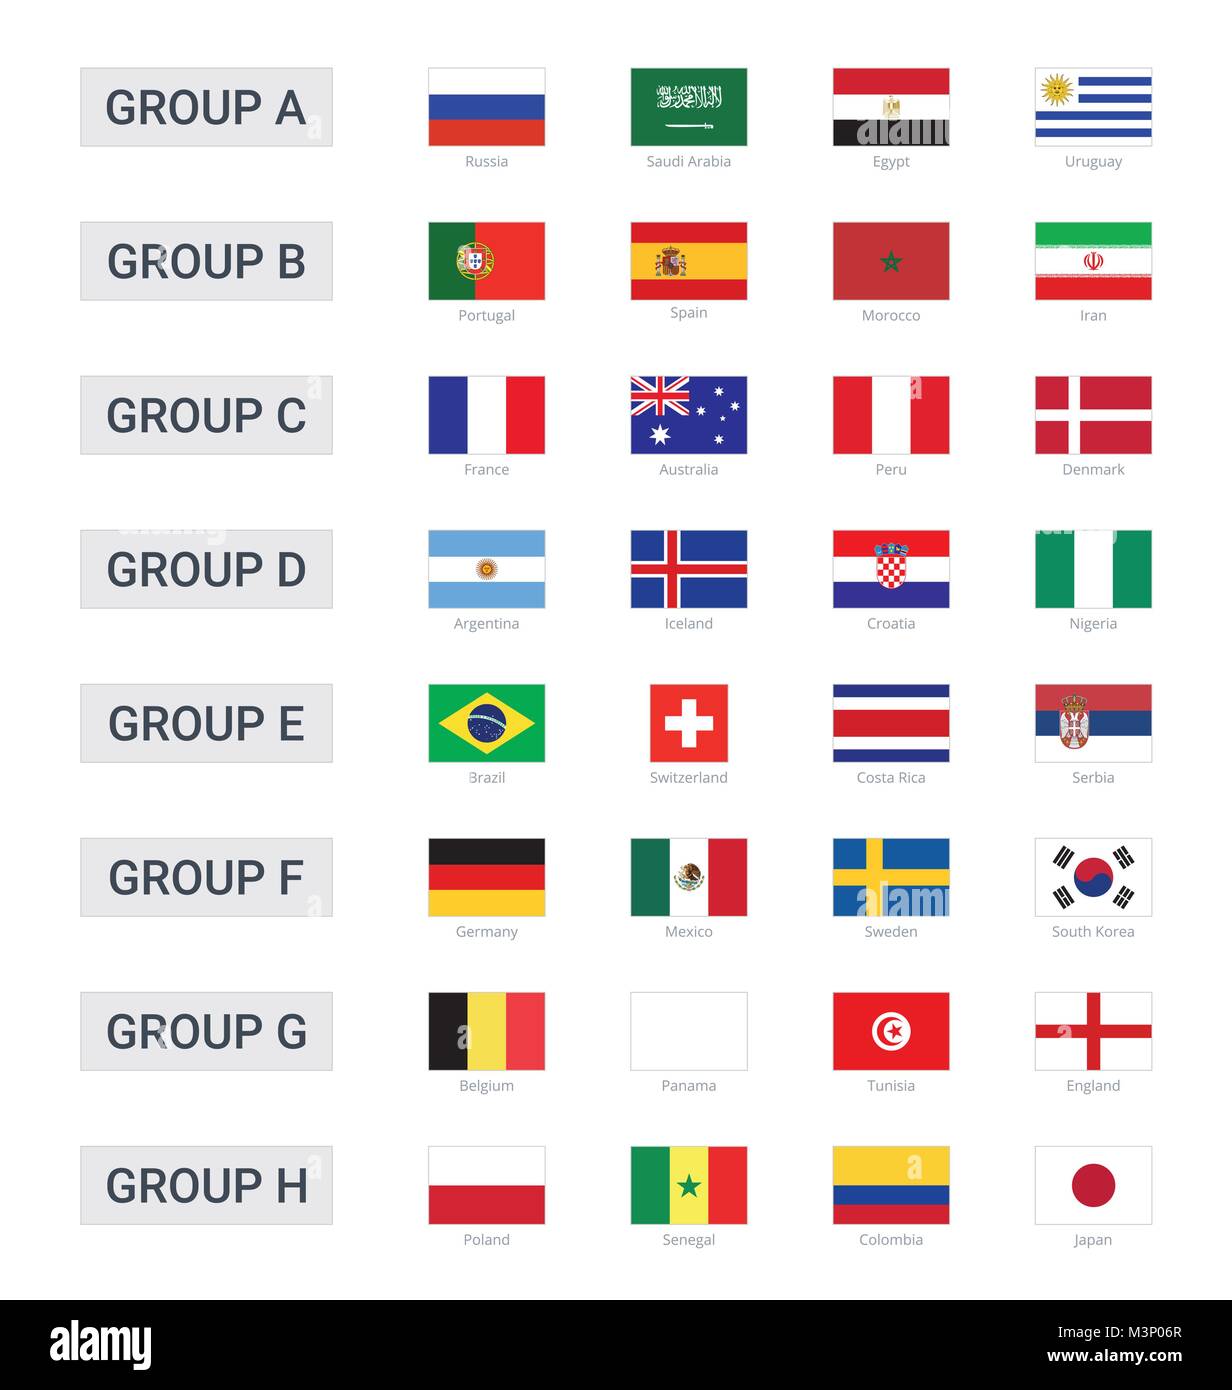 Gruppen von Meisterschaft Cup 2018 in Russland Stock Vektor